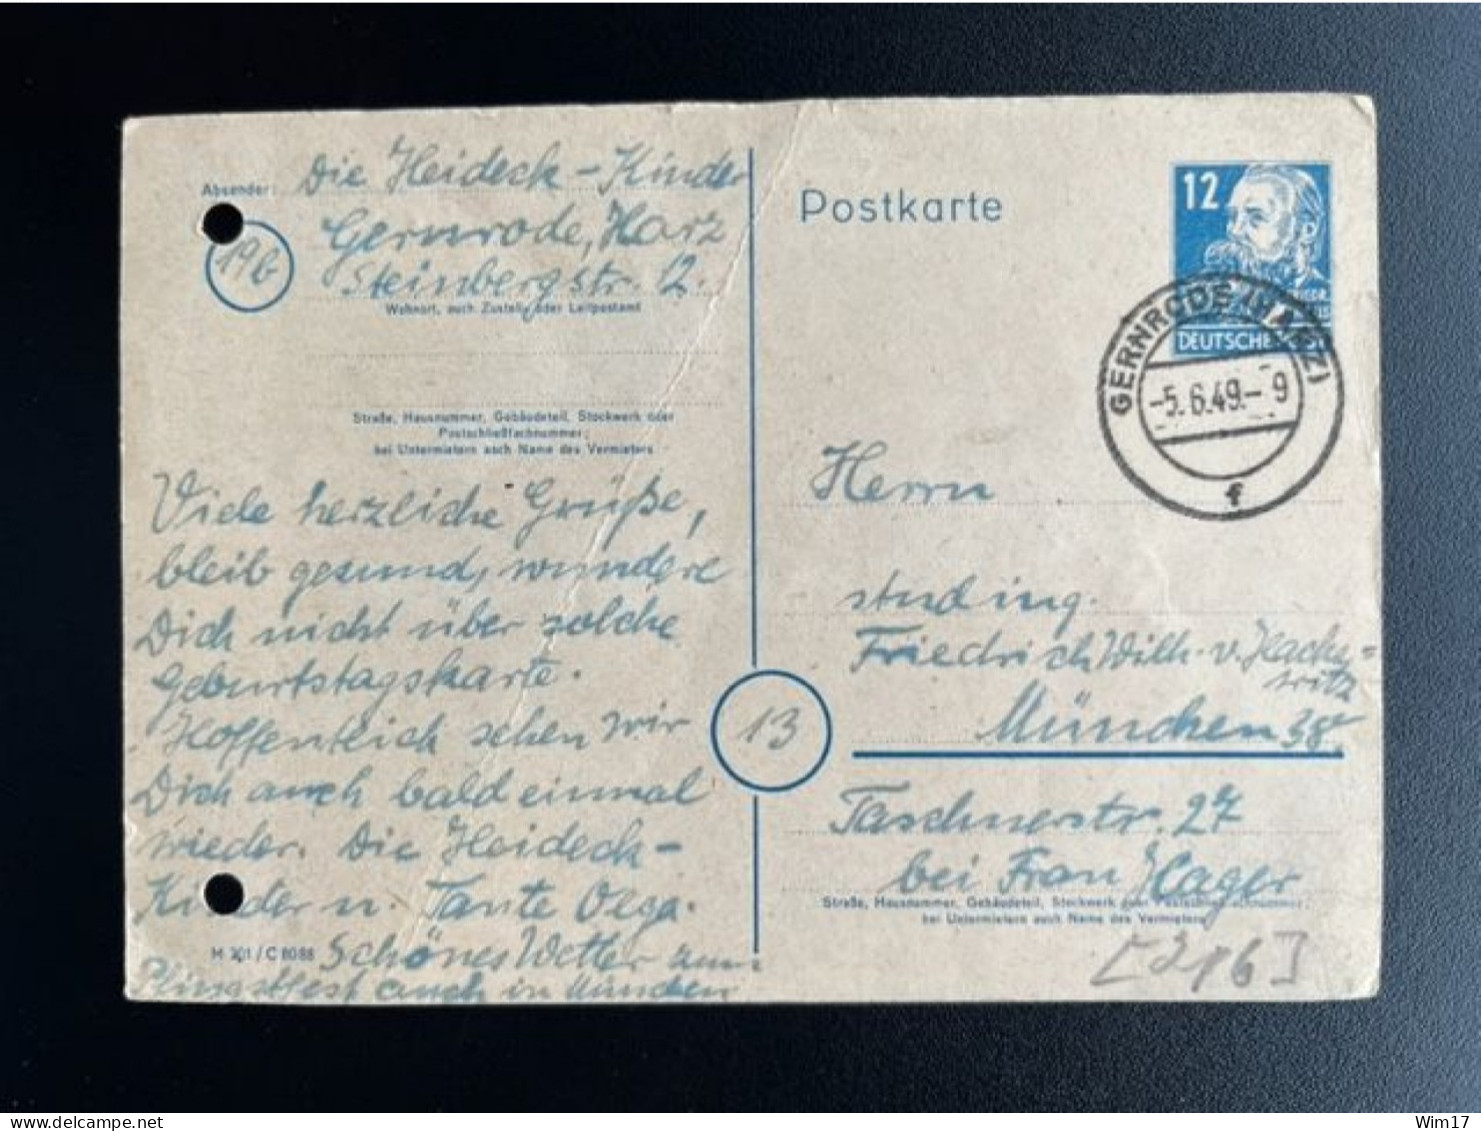 GERMANY 1949 POSTCARD GERNRODE TO MUNCHEN 05-06-1949 DUITSLAND DEUTSCHLAND - Interi Postali